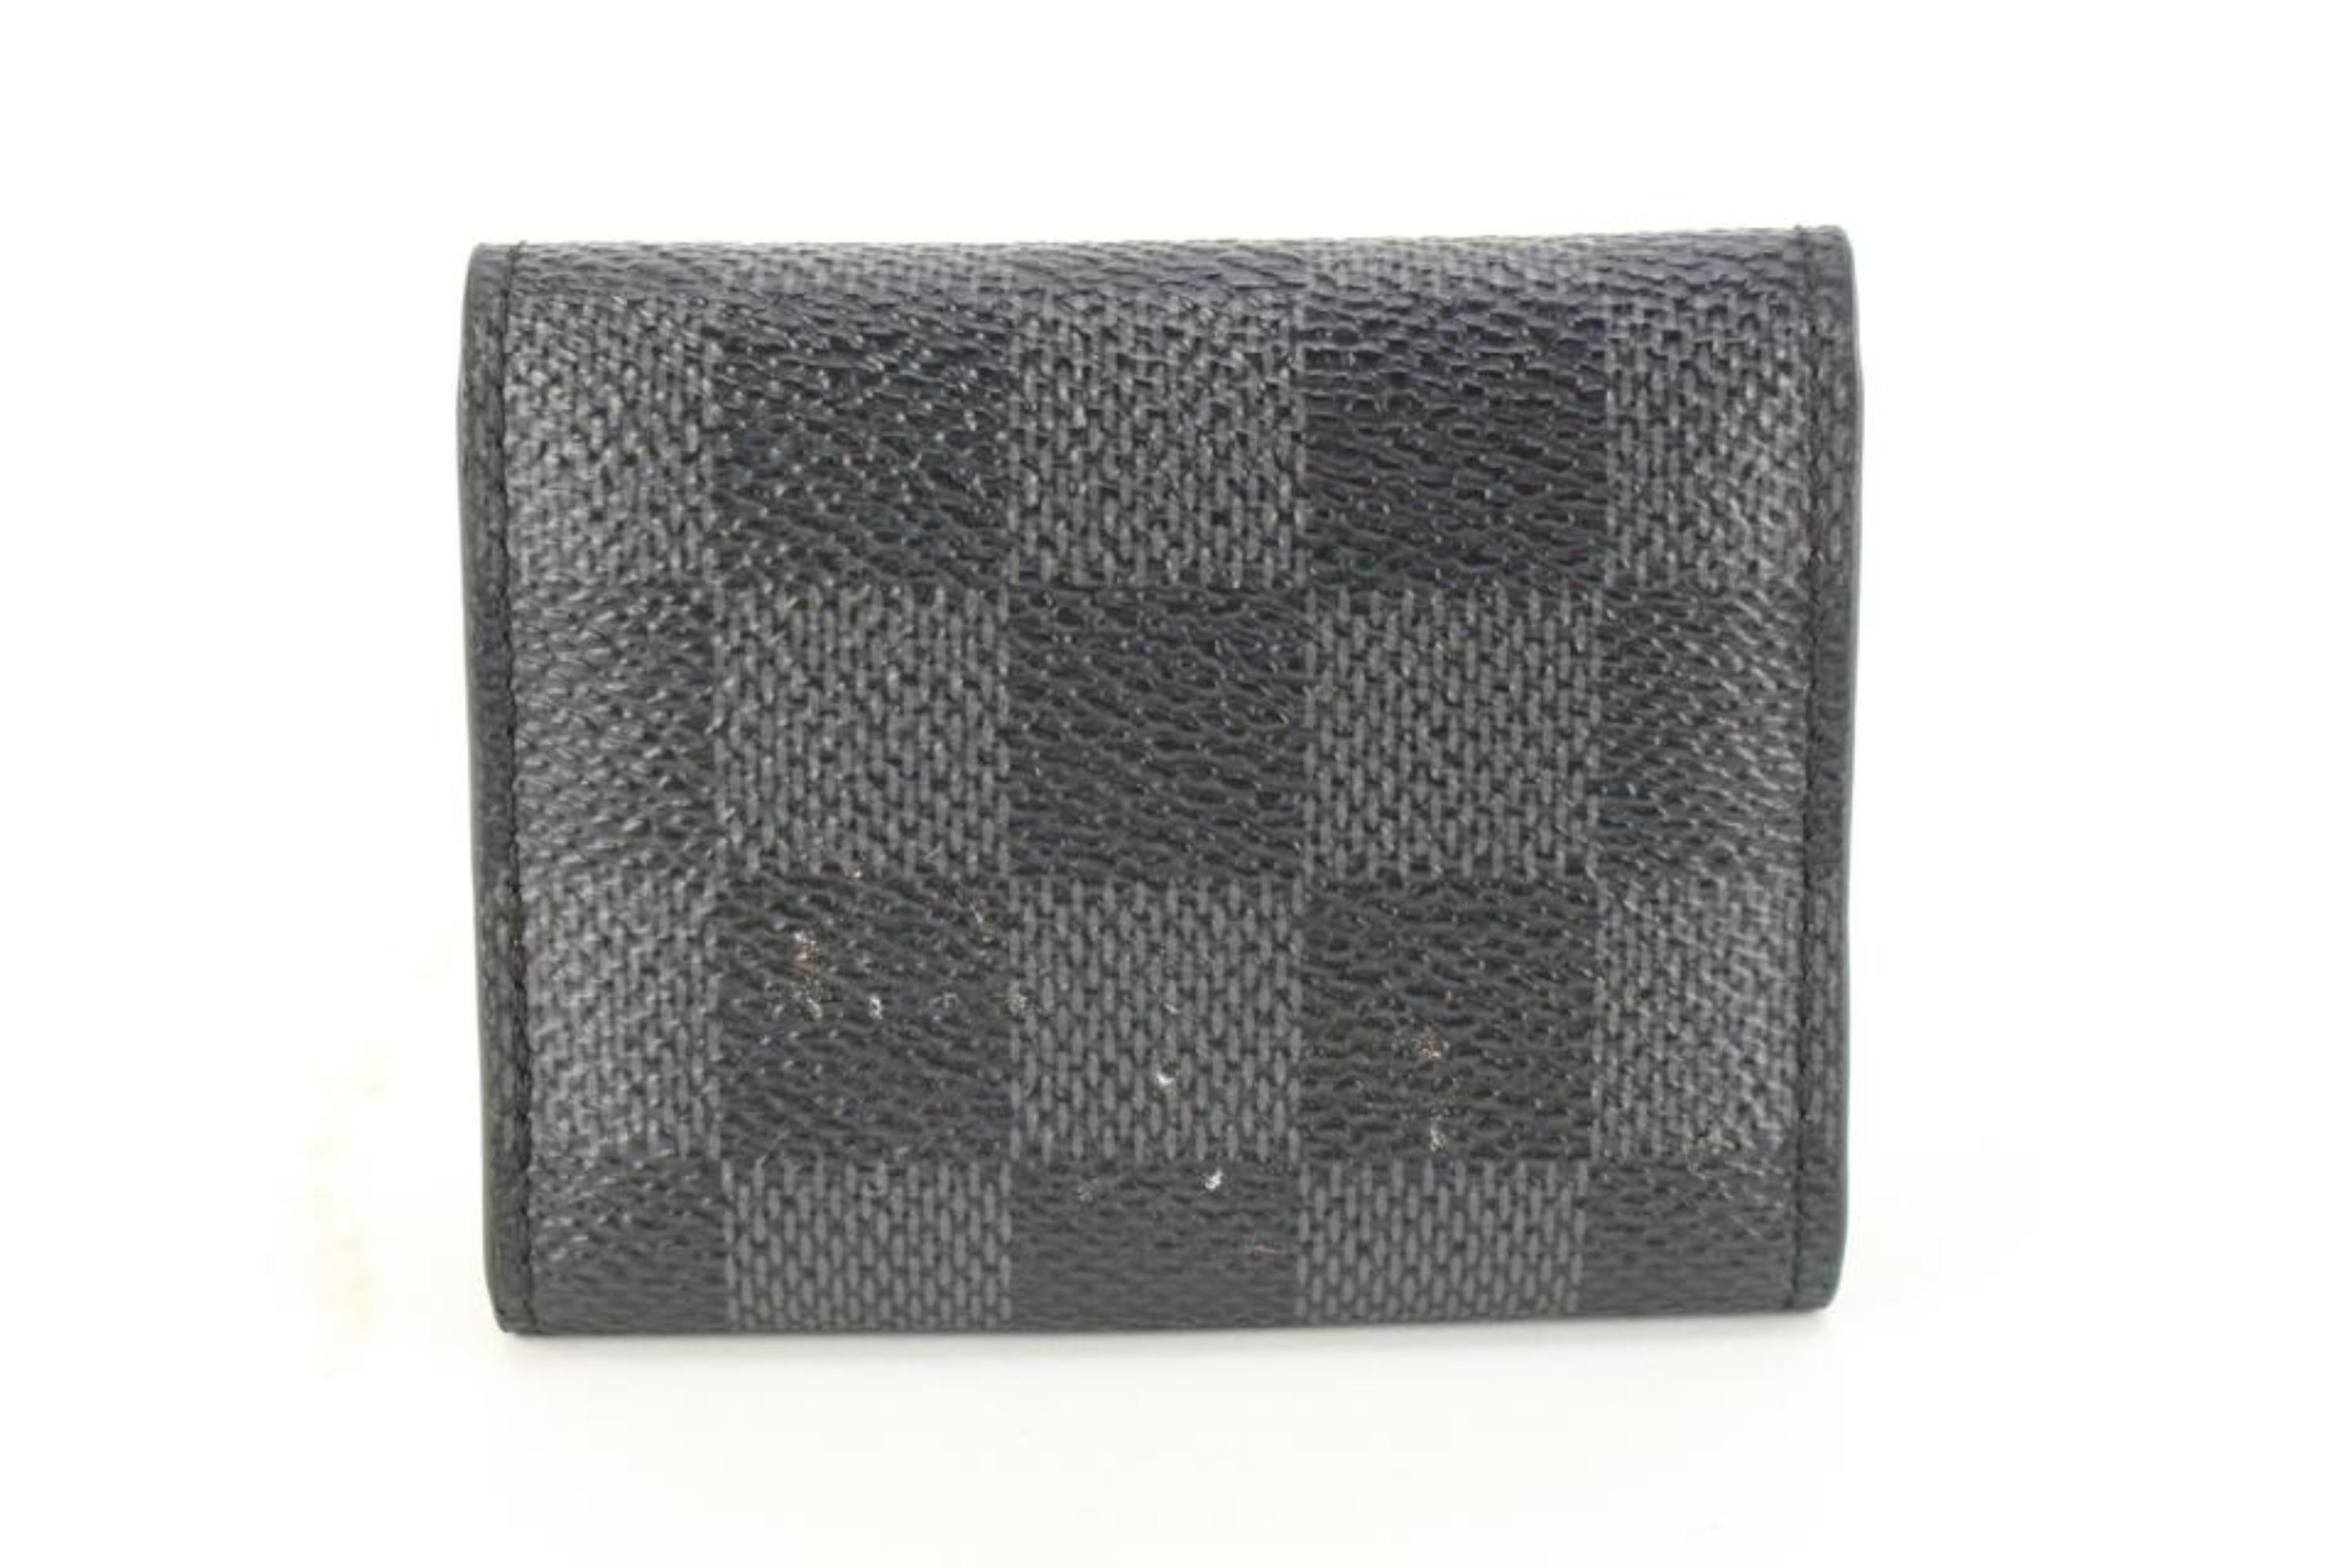 Louis Vuitton Damier Graphite Cufflink Pouch Case Holder 96lk616s For Sale 4